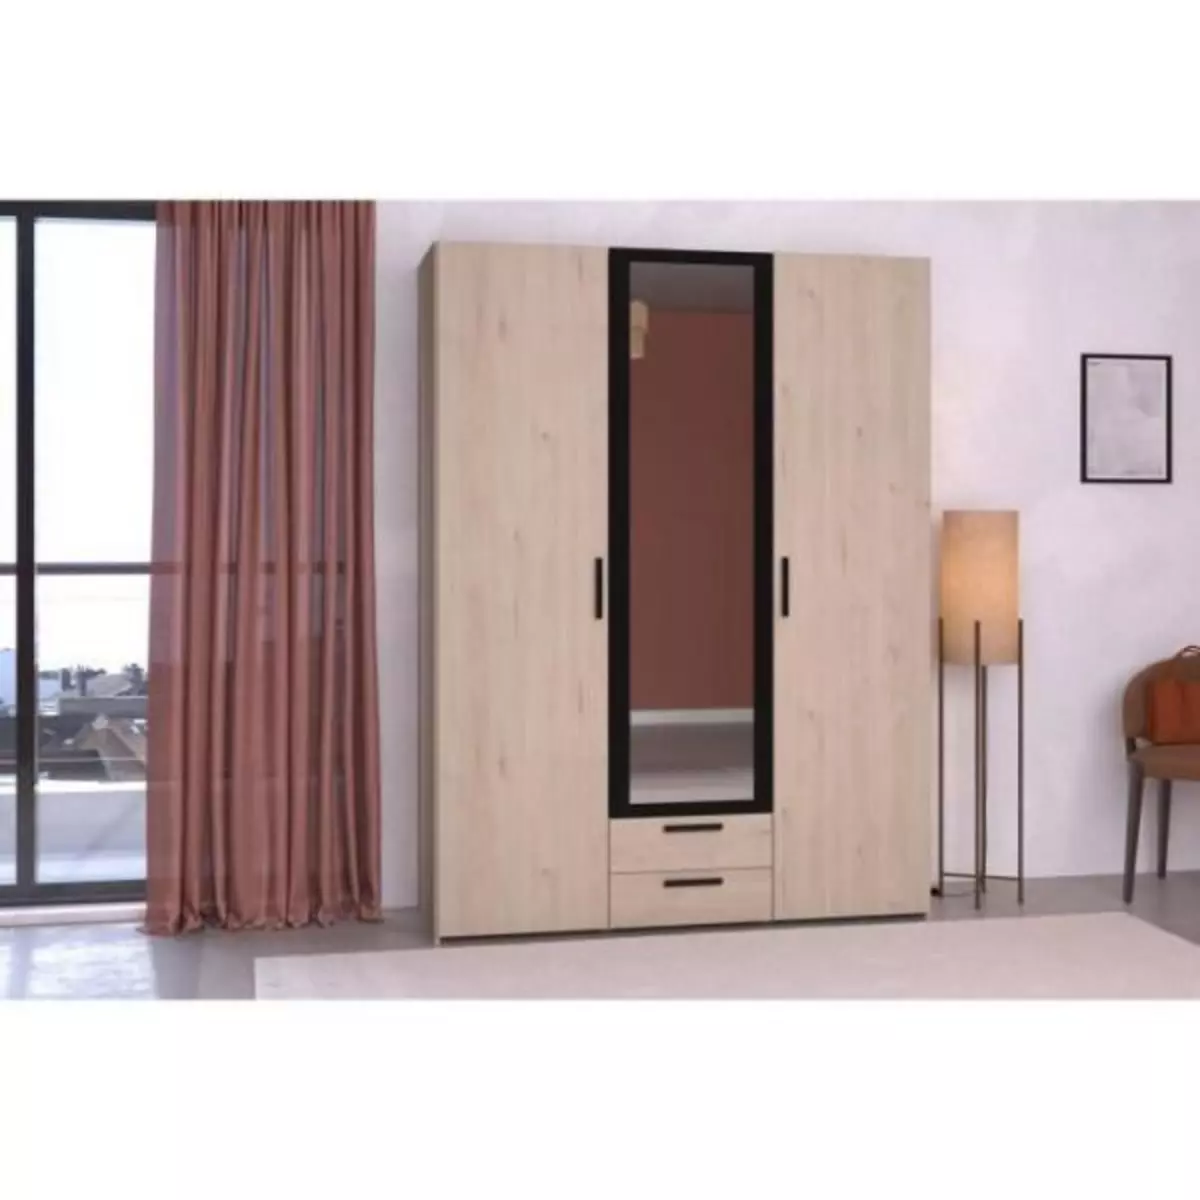 PARISOT Armoire - Panneau de particules - Décor chene et noir - 3 portes centrales - Essentiel - Chambre - 150.3x200x51.7cm